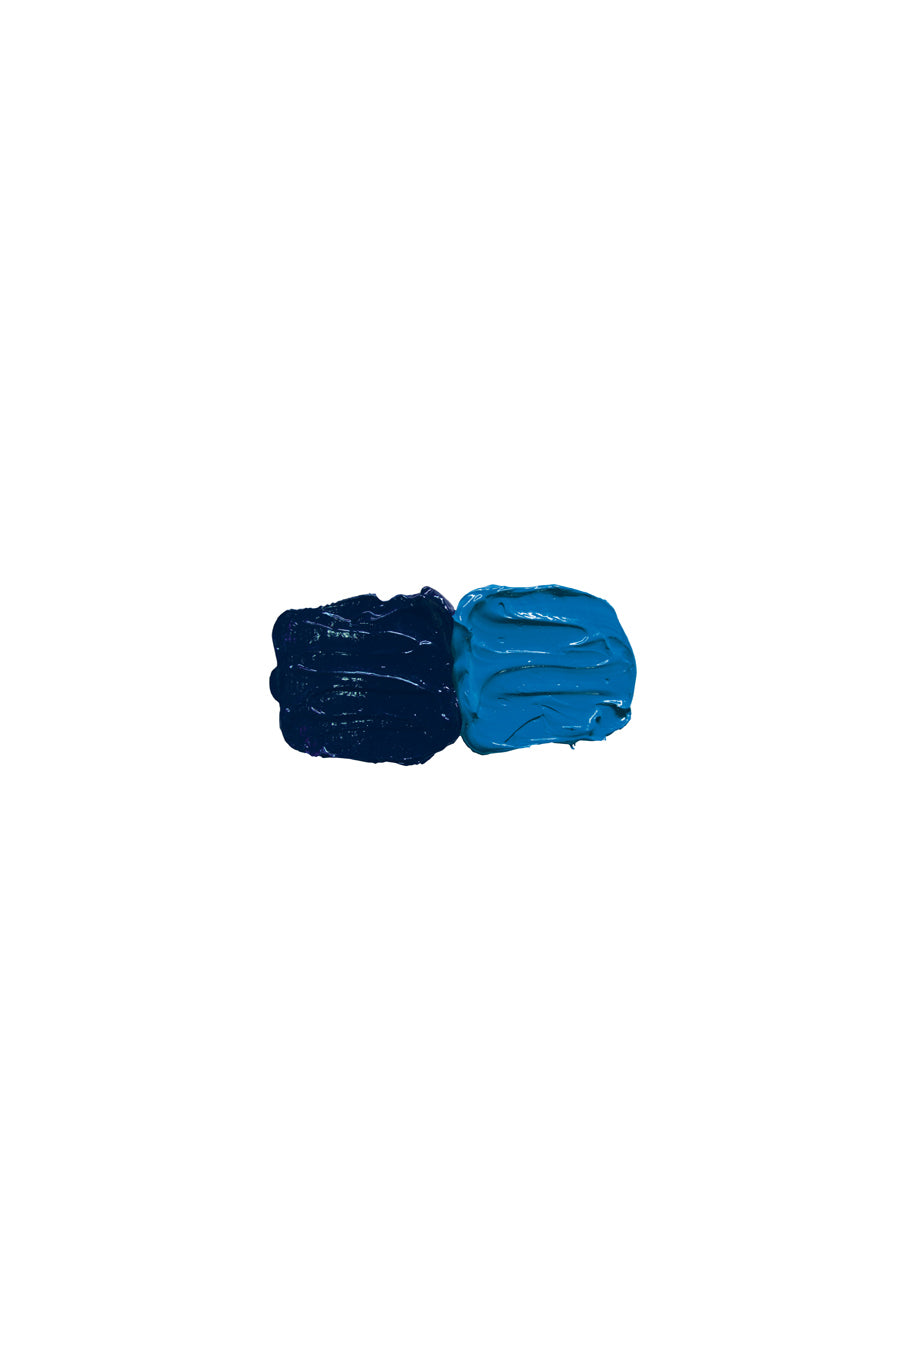 Pre-Tested®#Oil Cobalt Blue